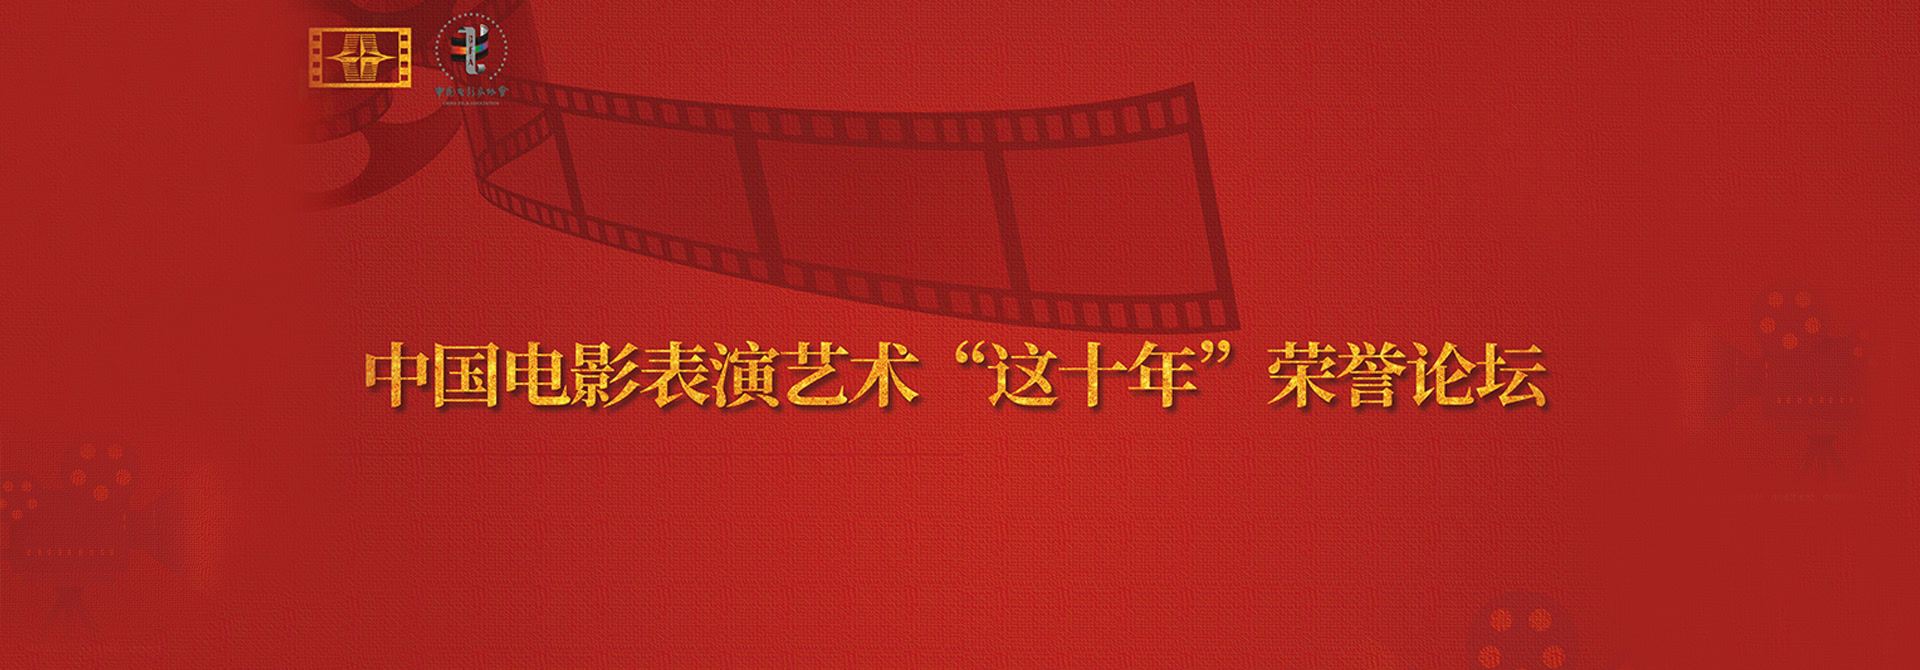 中国电影表演艺术 &#34;这十年&#34; 荣誉论坛